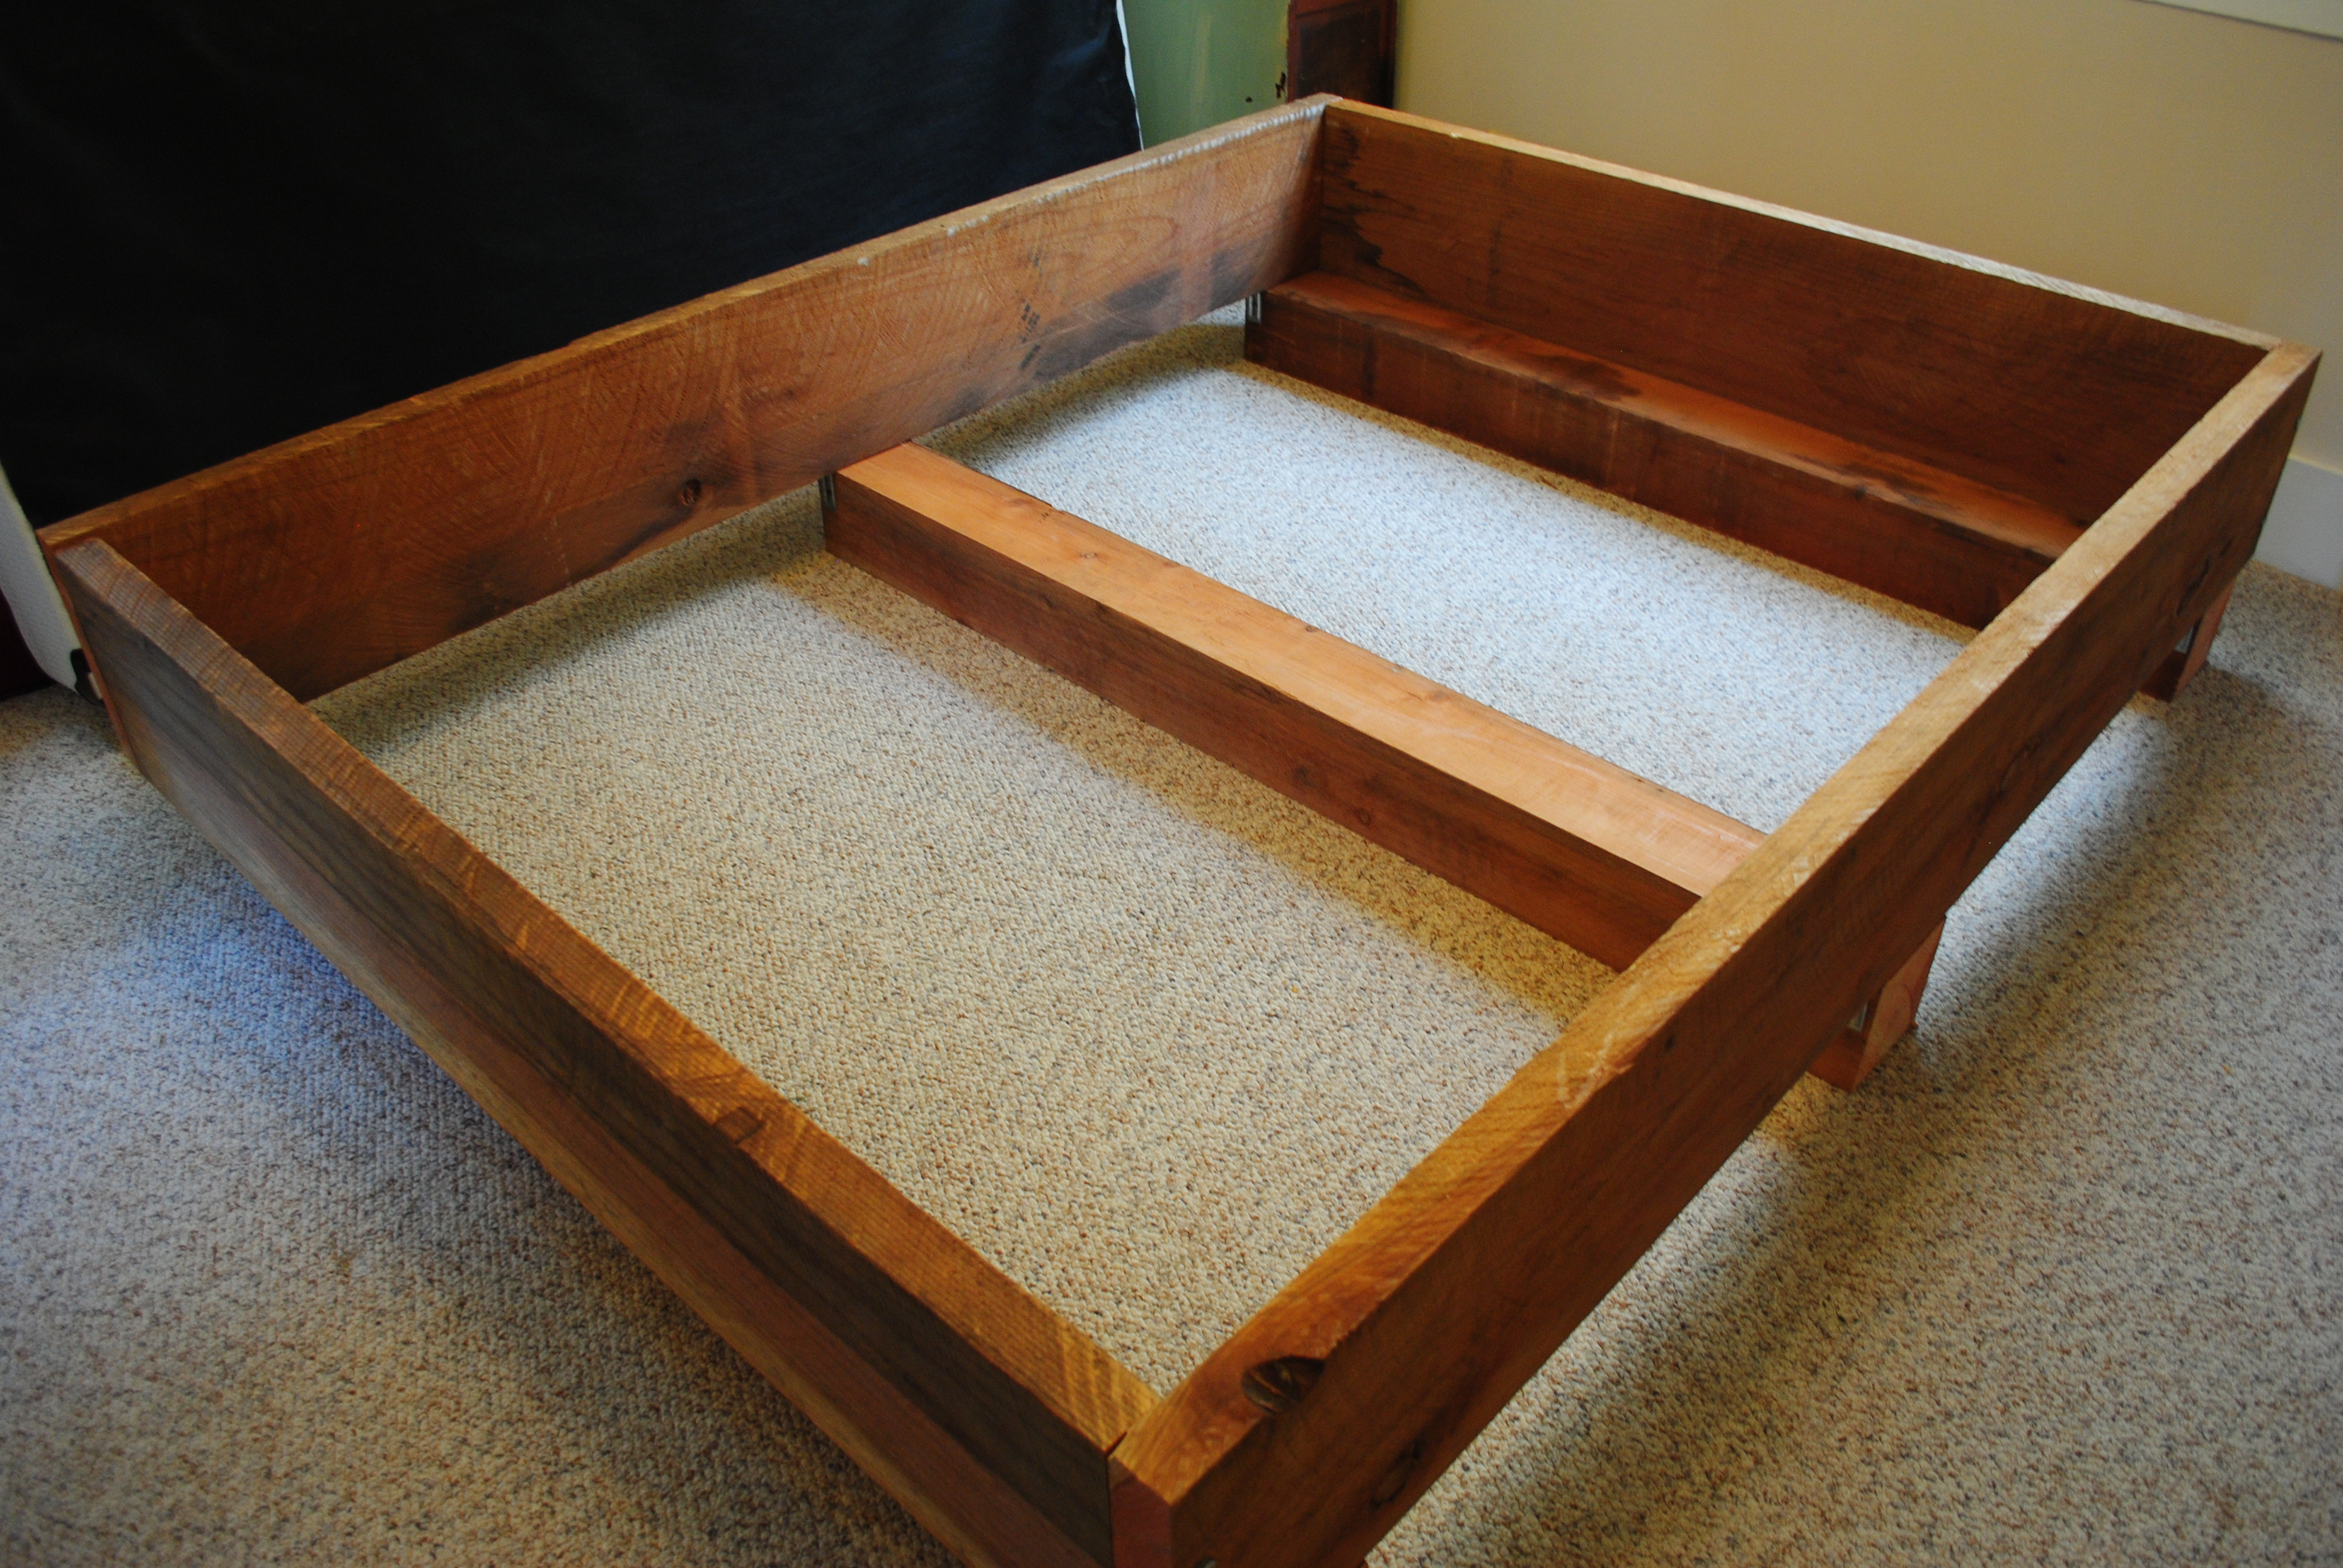 Woodworking log bed frame diy PDF Free Download